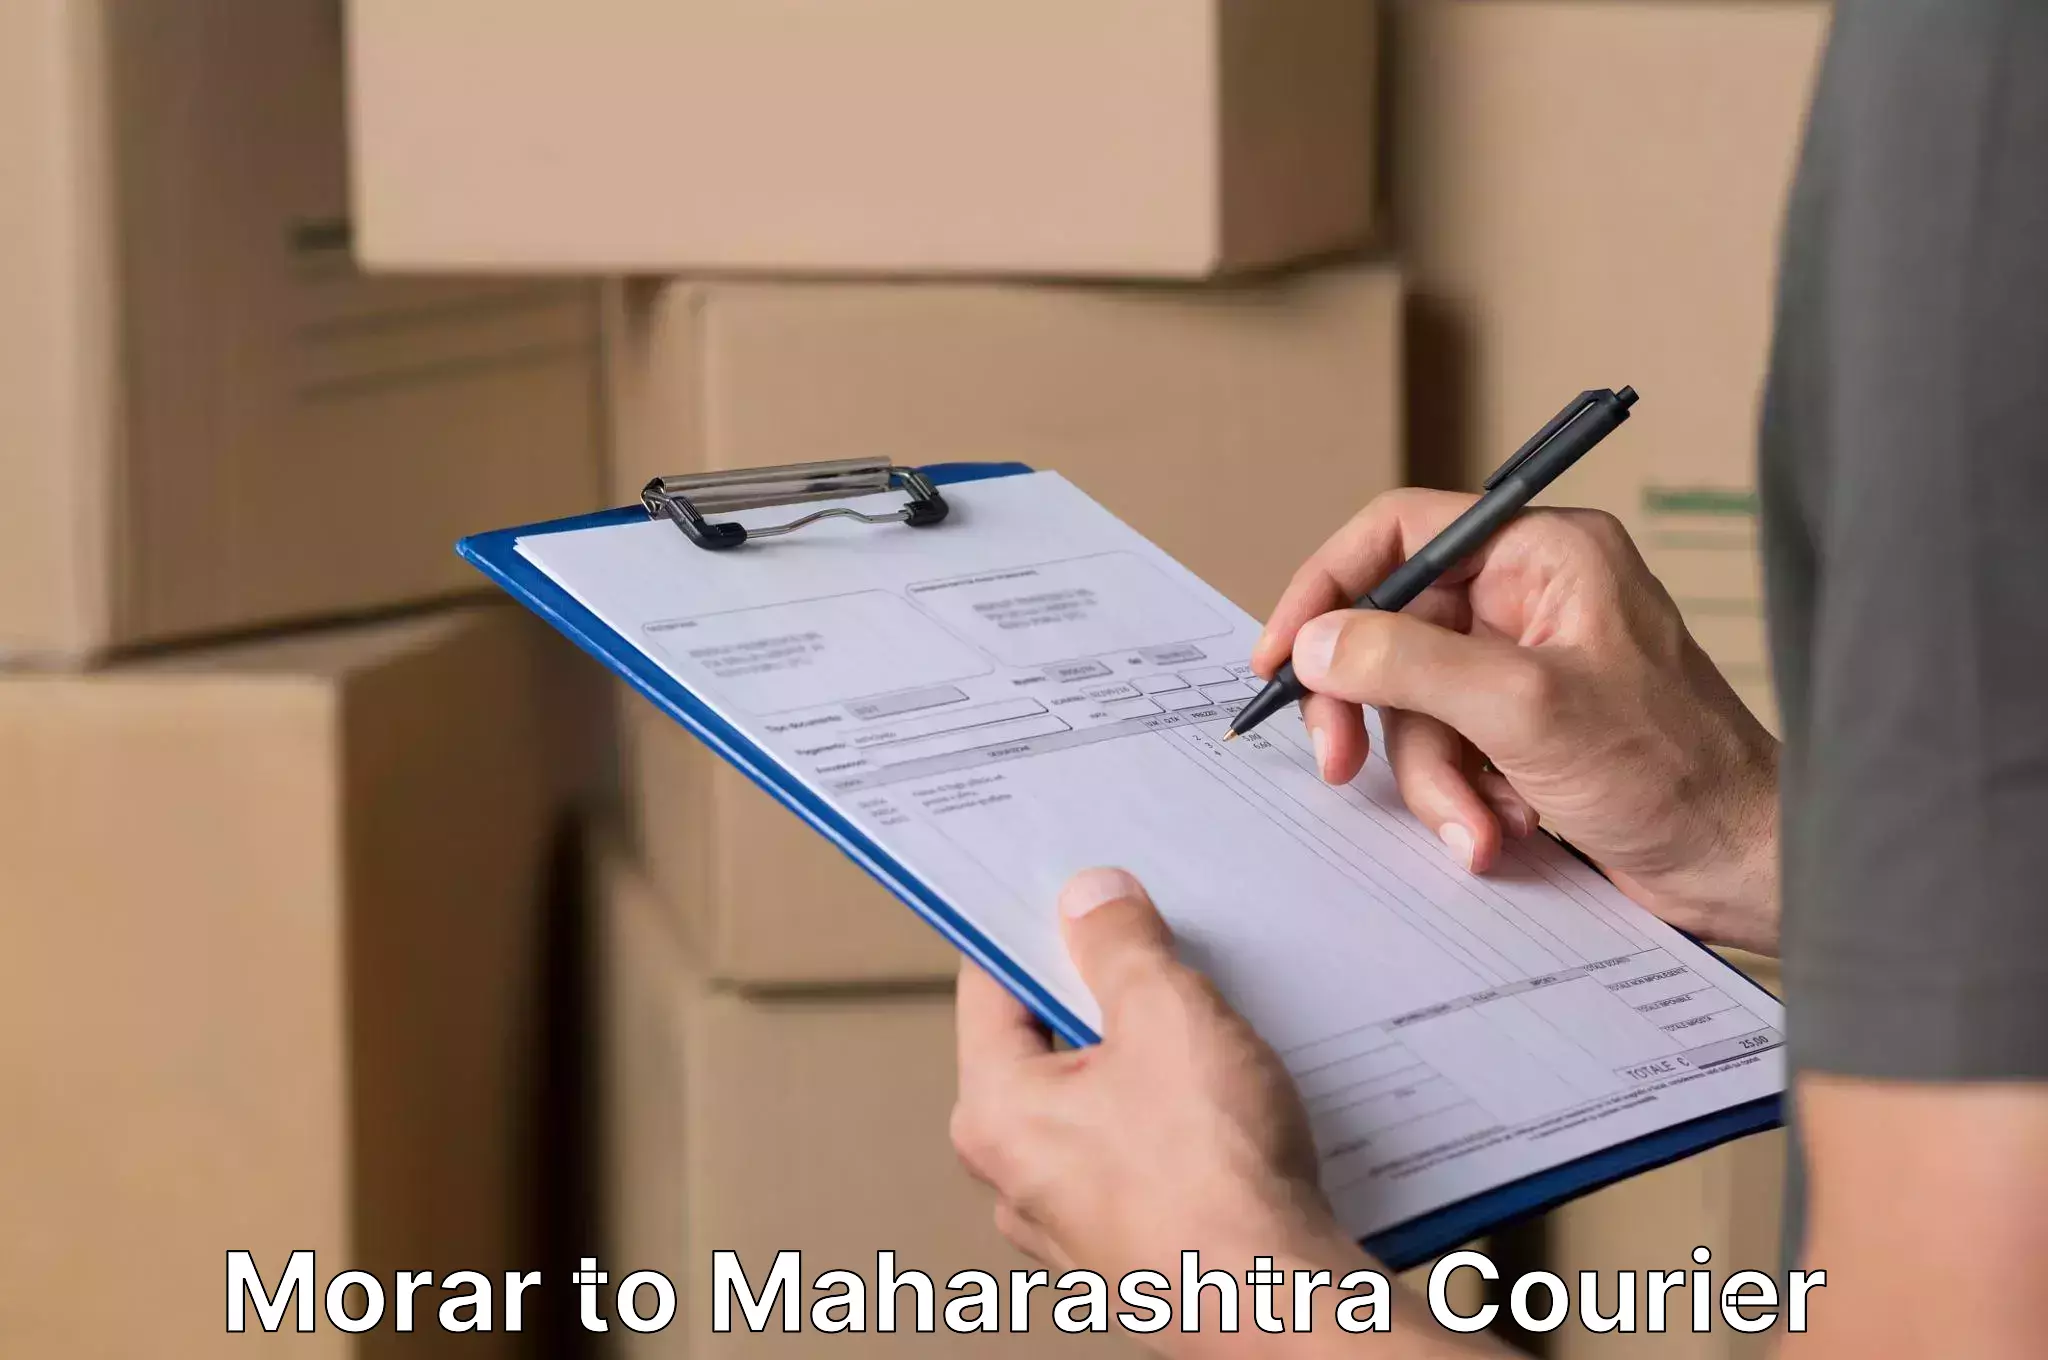 Trusted household movers Morar to Maharashtra